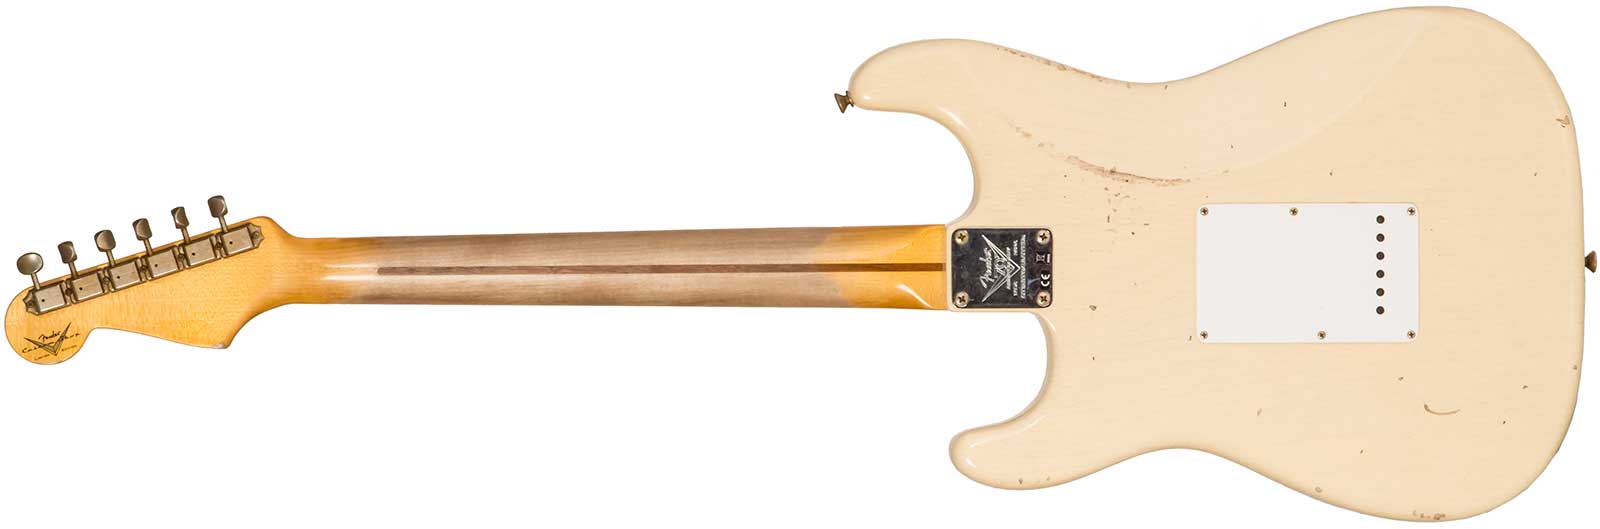 Fender Custom Shop Strat 1954 70th Anniv. 3s Trem Mn #xn4382 - Relic Vintage Blonde - Str shape electric guitar - Variation 1